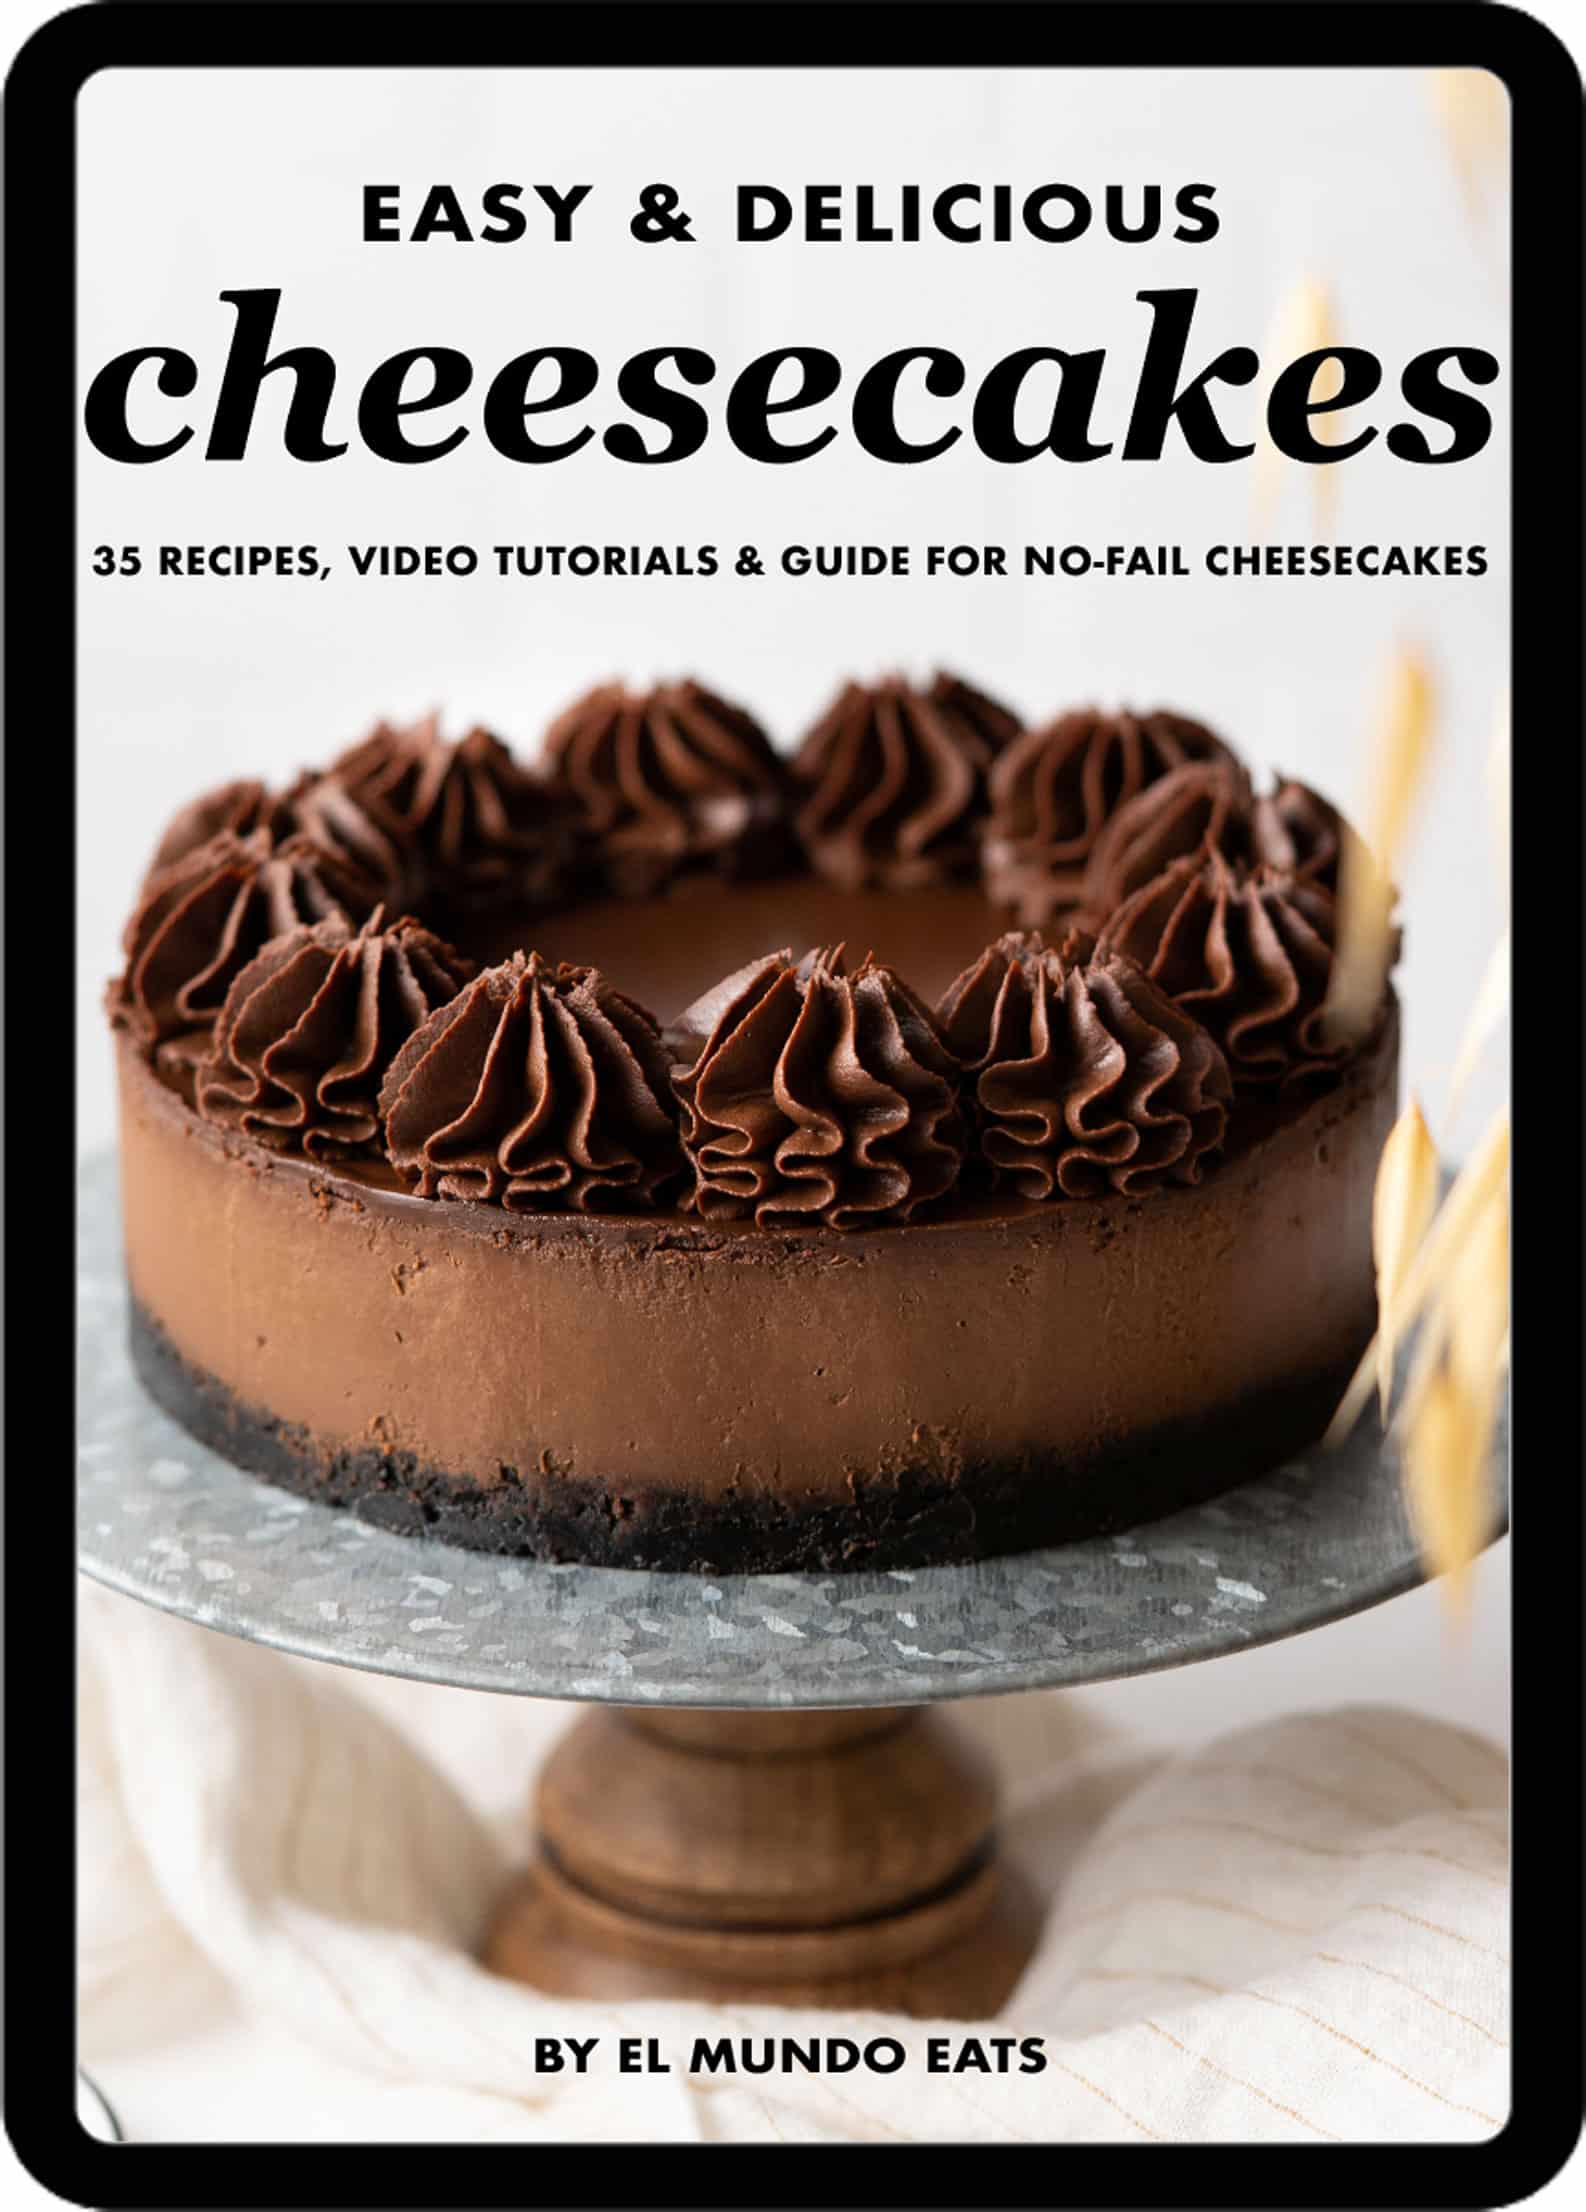 El Mundo Eats cheesecakes ebook cover.